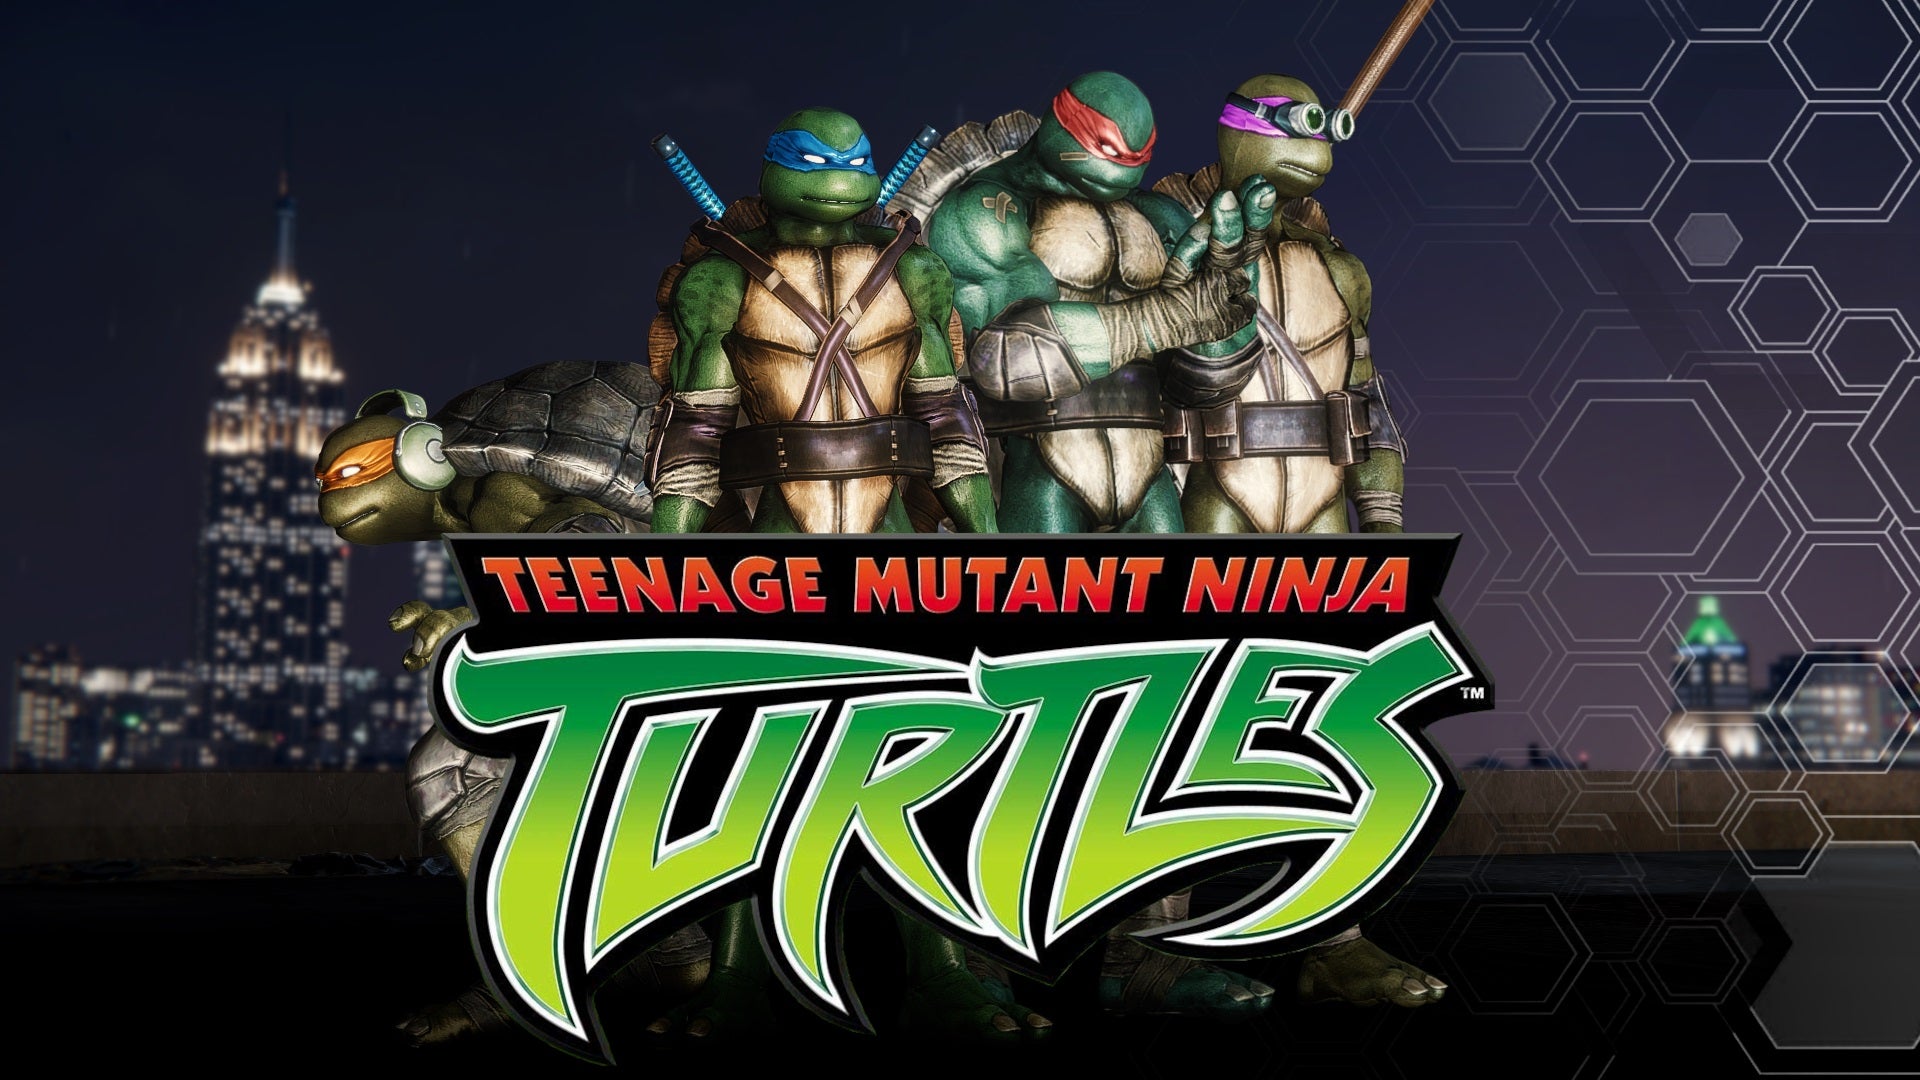 Teenage Mutant Ninja Turtles mod for Spider-Man Remastered